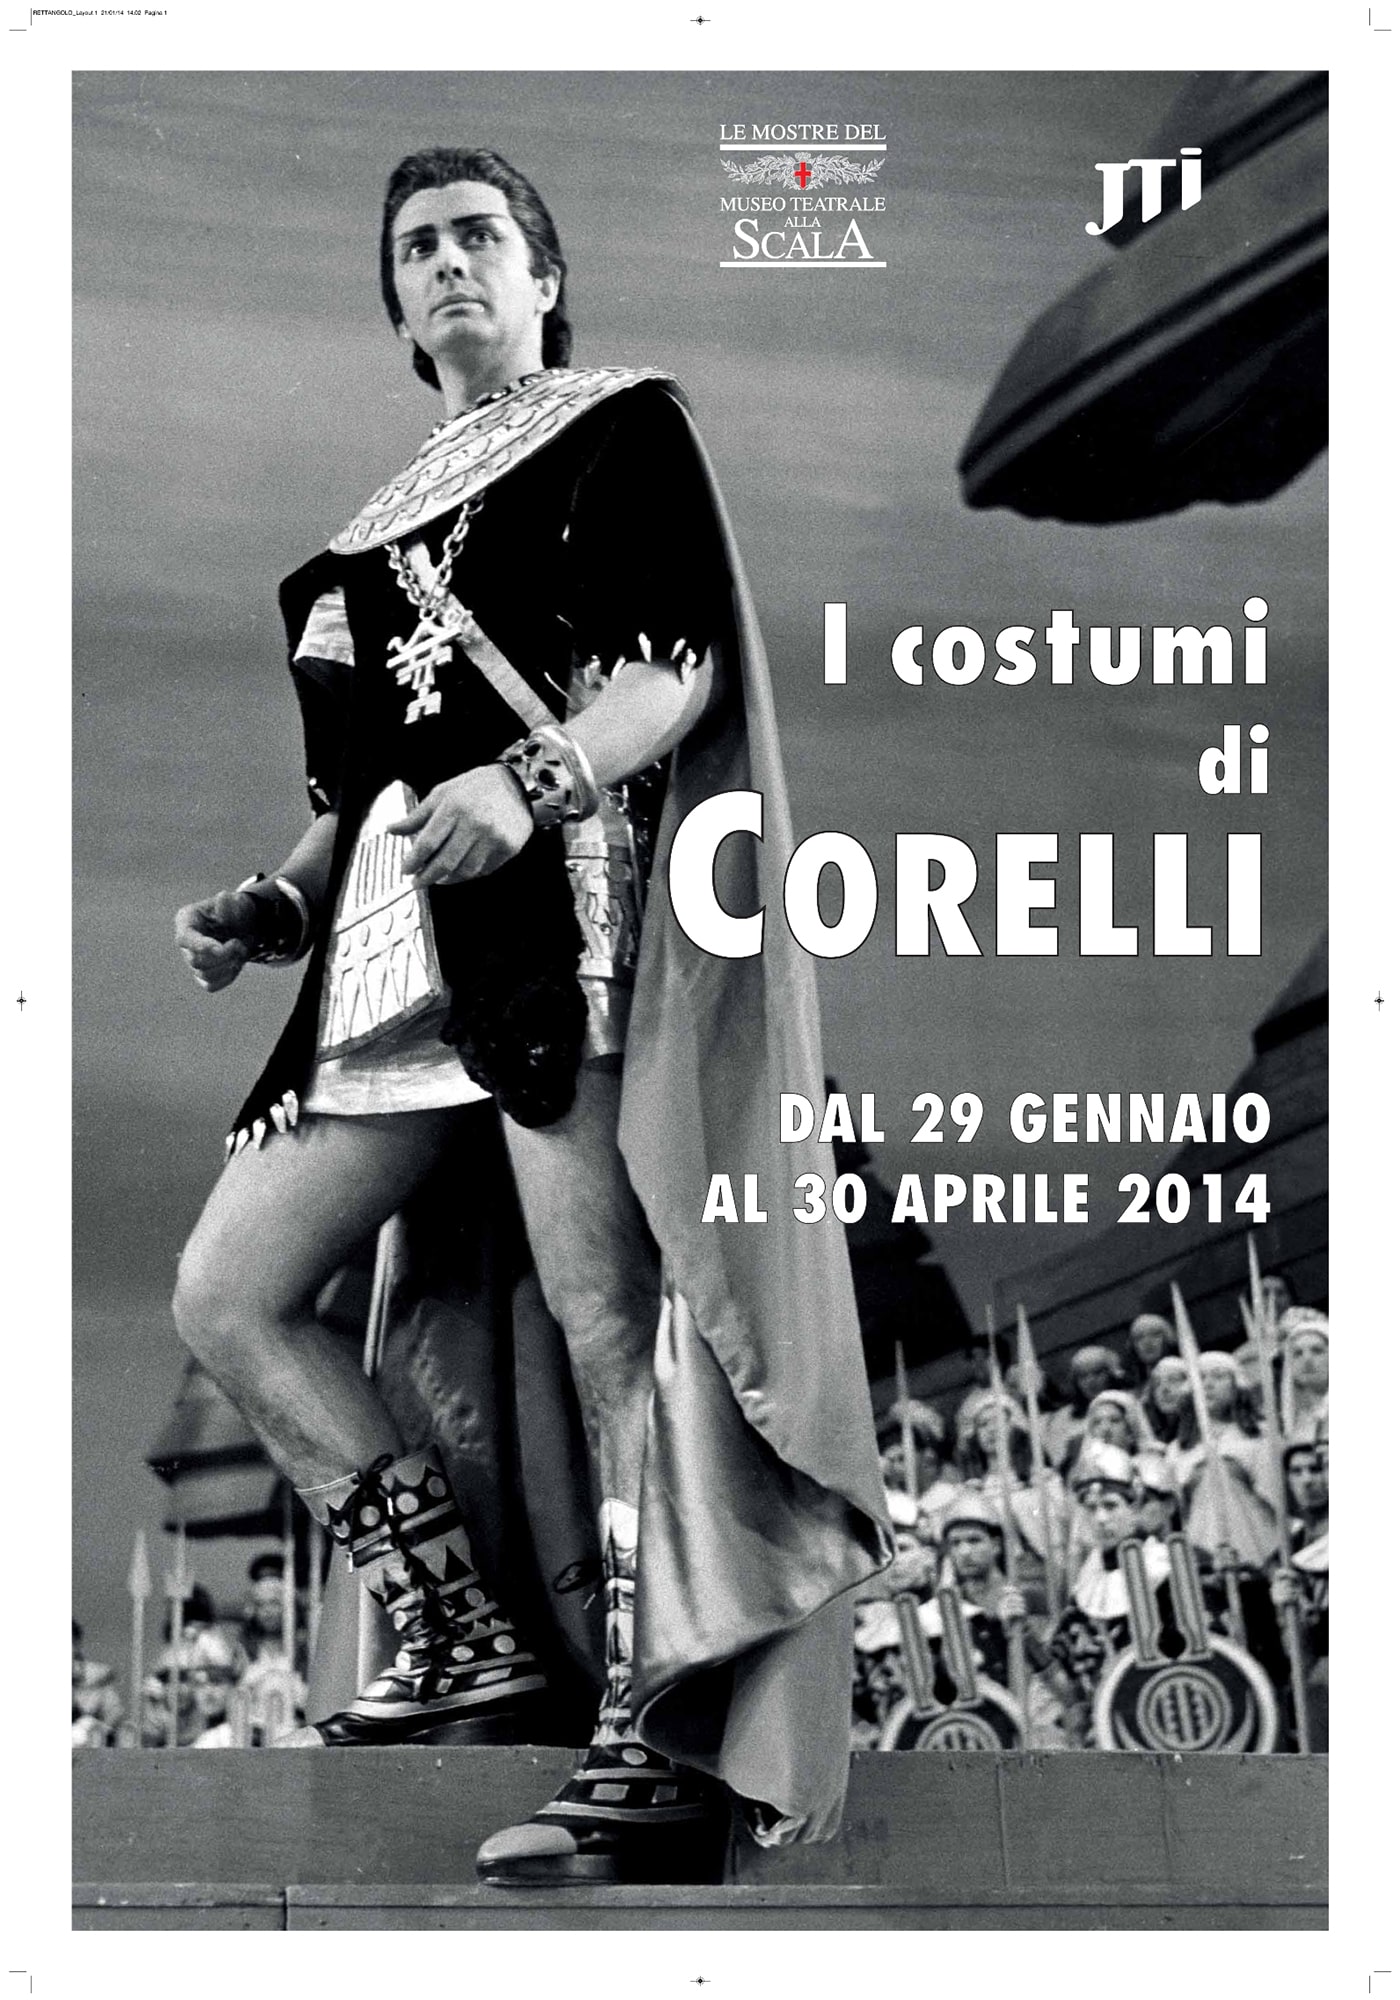 I-costumi-di-Corelli-gen-apr-2014-min